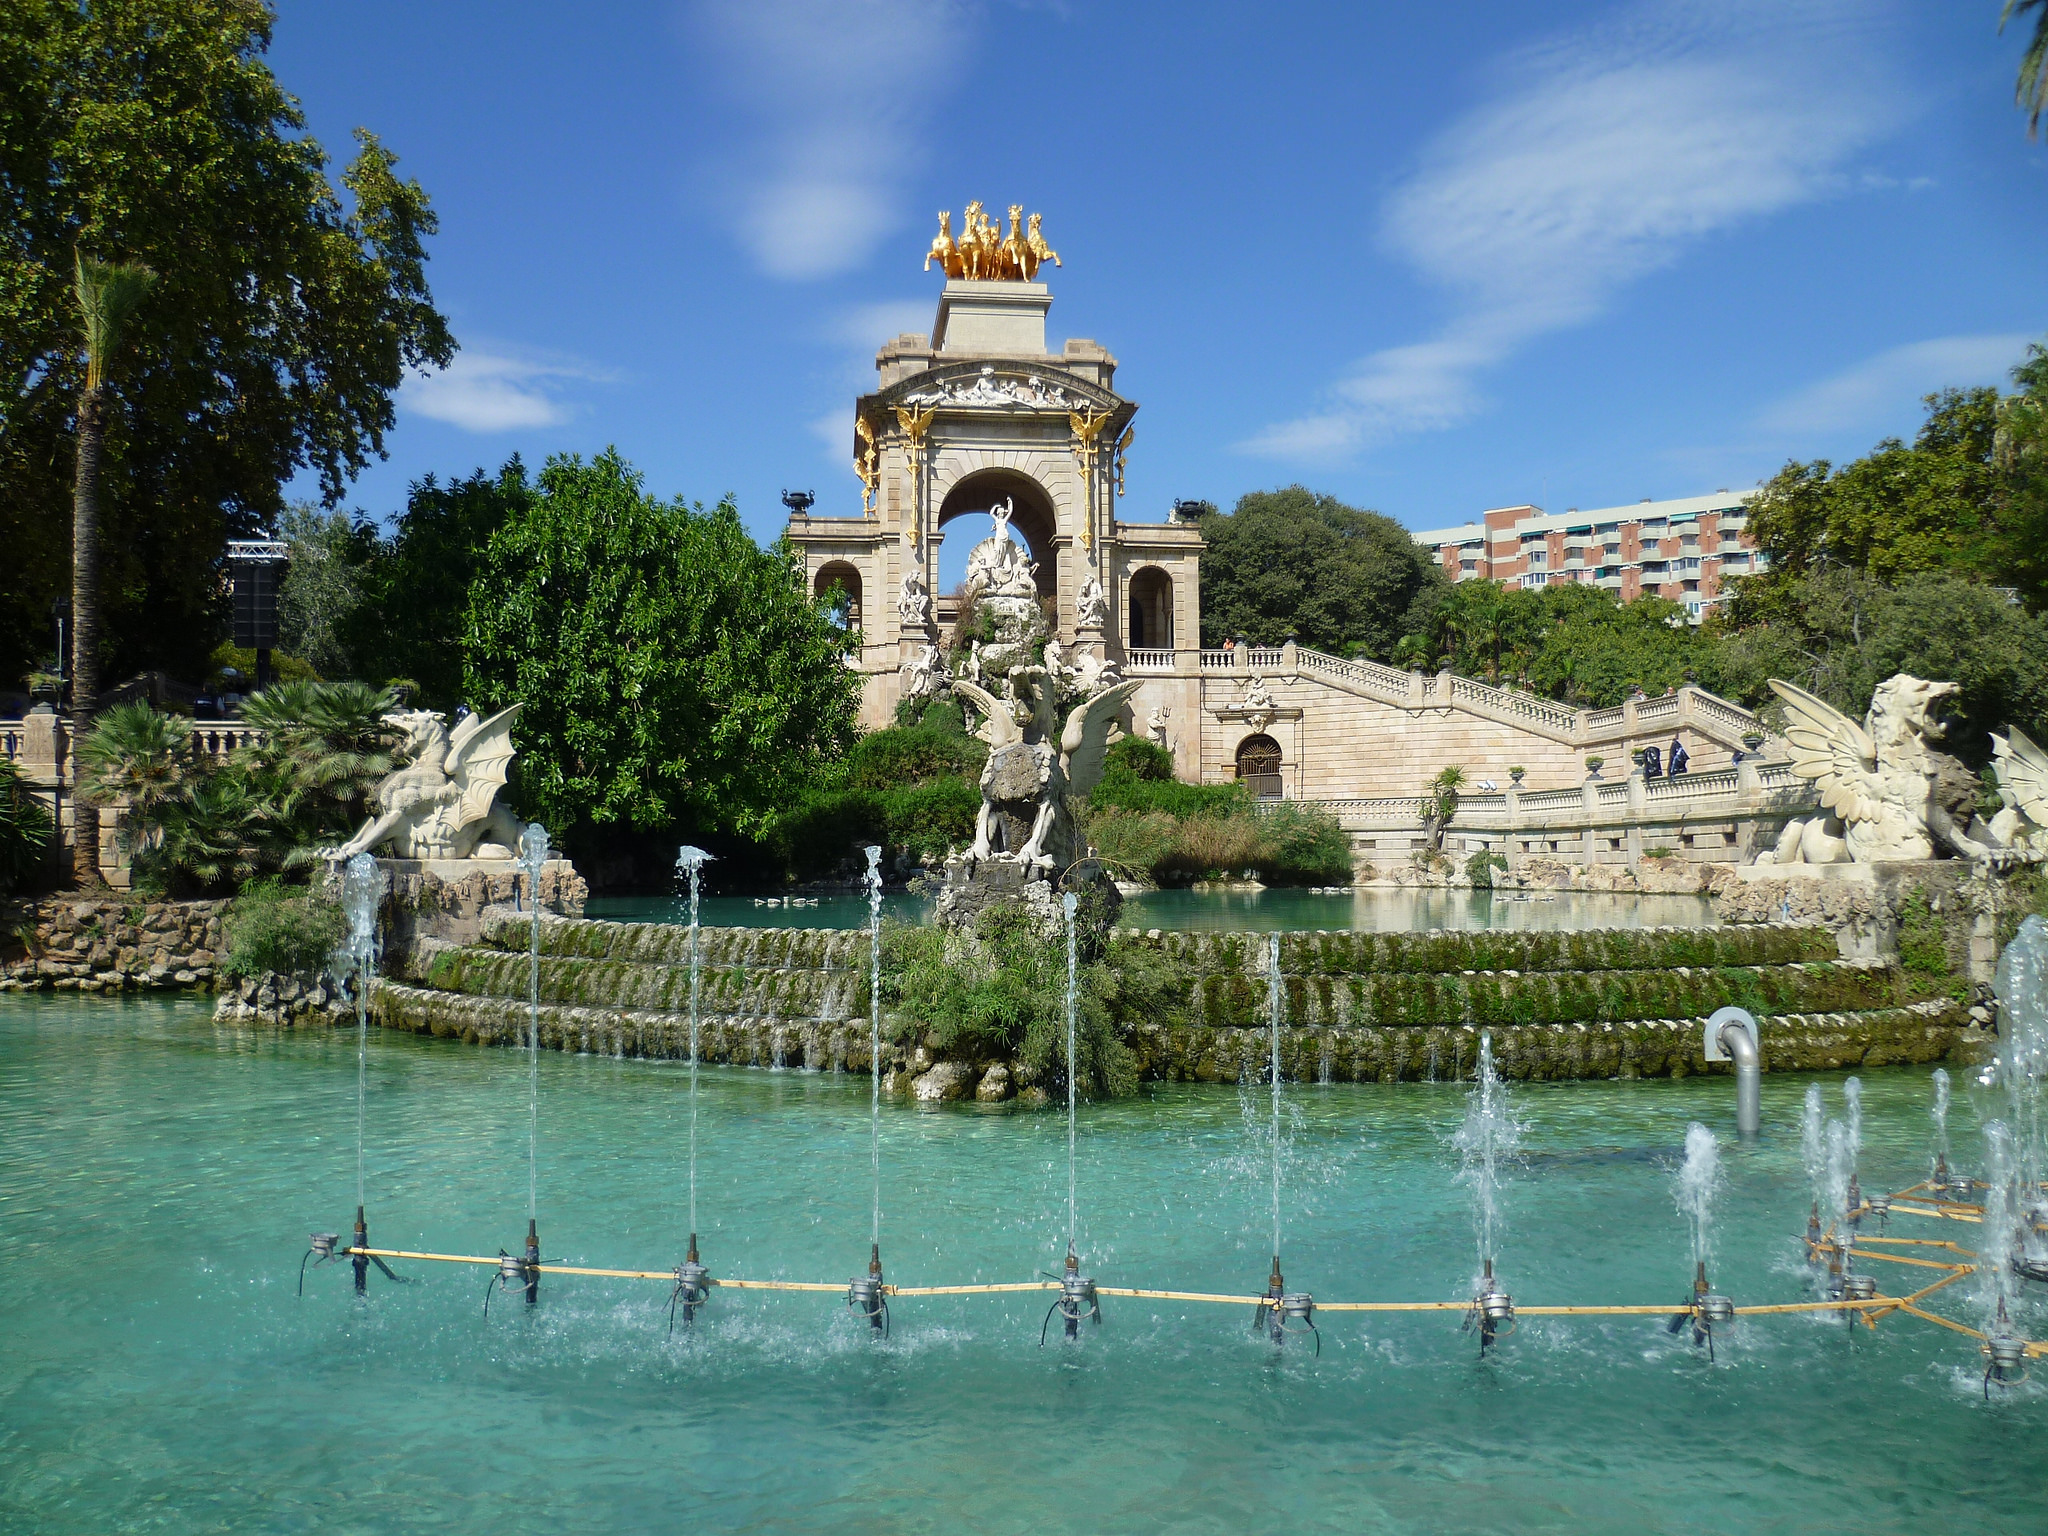 La Fontaine du Parc de la Ciutadella, un des nombreux décors sublimes de cet espace vert. Crédit photo @Charlie Dave - Flickr